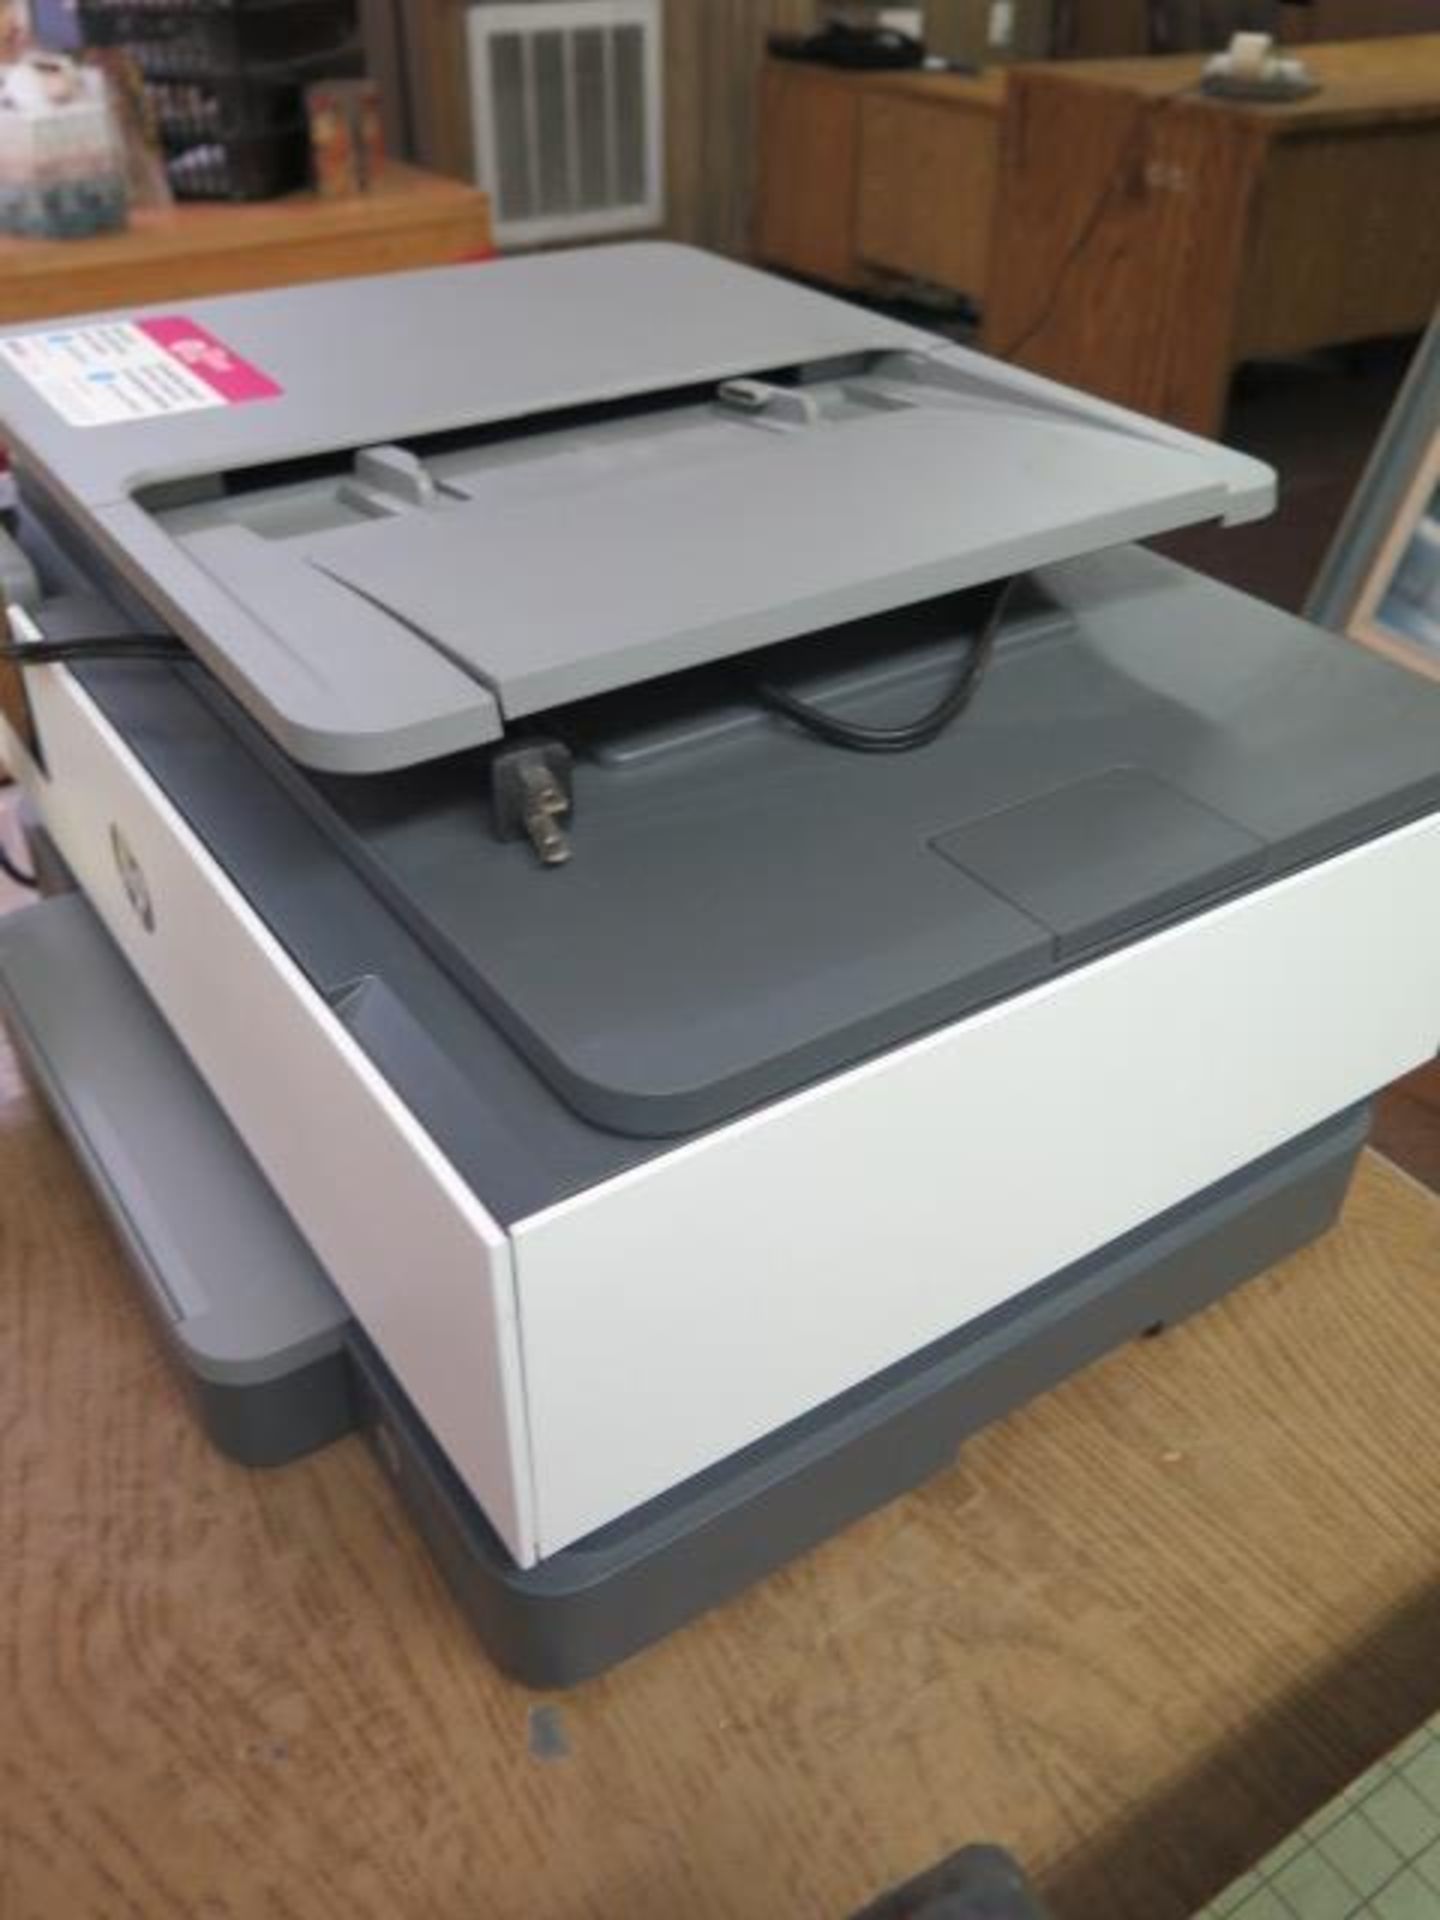 Hewlett Packard OfficeJet Pro 825 Office Copier/Printer (SOLD AS-IS - NO WARRANTY) - Image 2 of 5